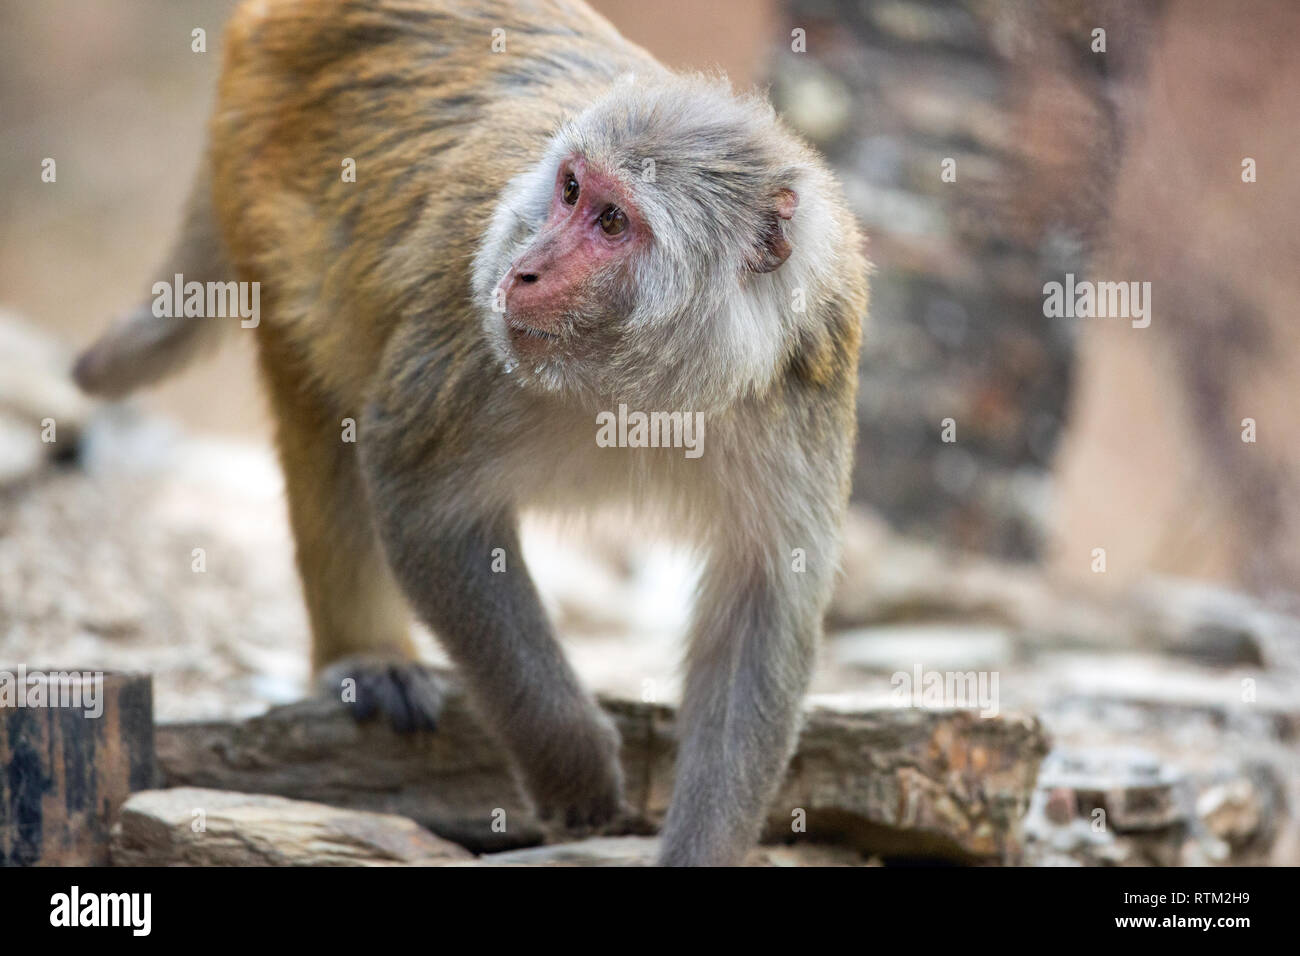 Rhesus Makaken (Macaca mulatta). Nach monkey, suchen, Futtersuche, für wirbellose Lebensmittel unter Steinmauer Brammen. Im Norden Indiens. Stockfoto